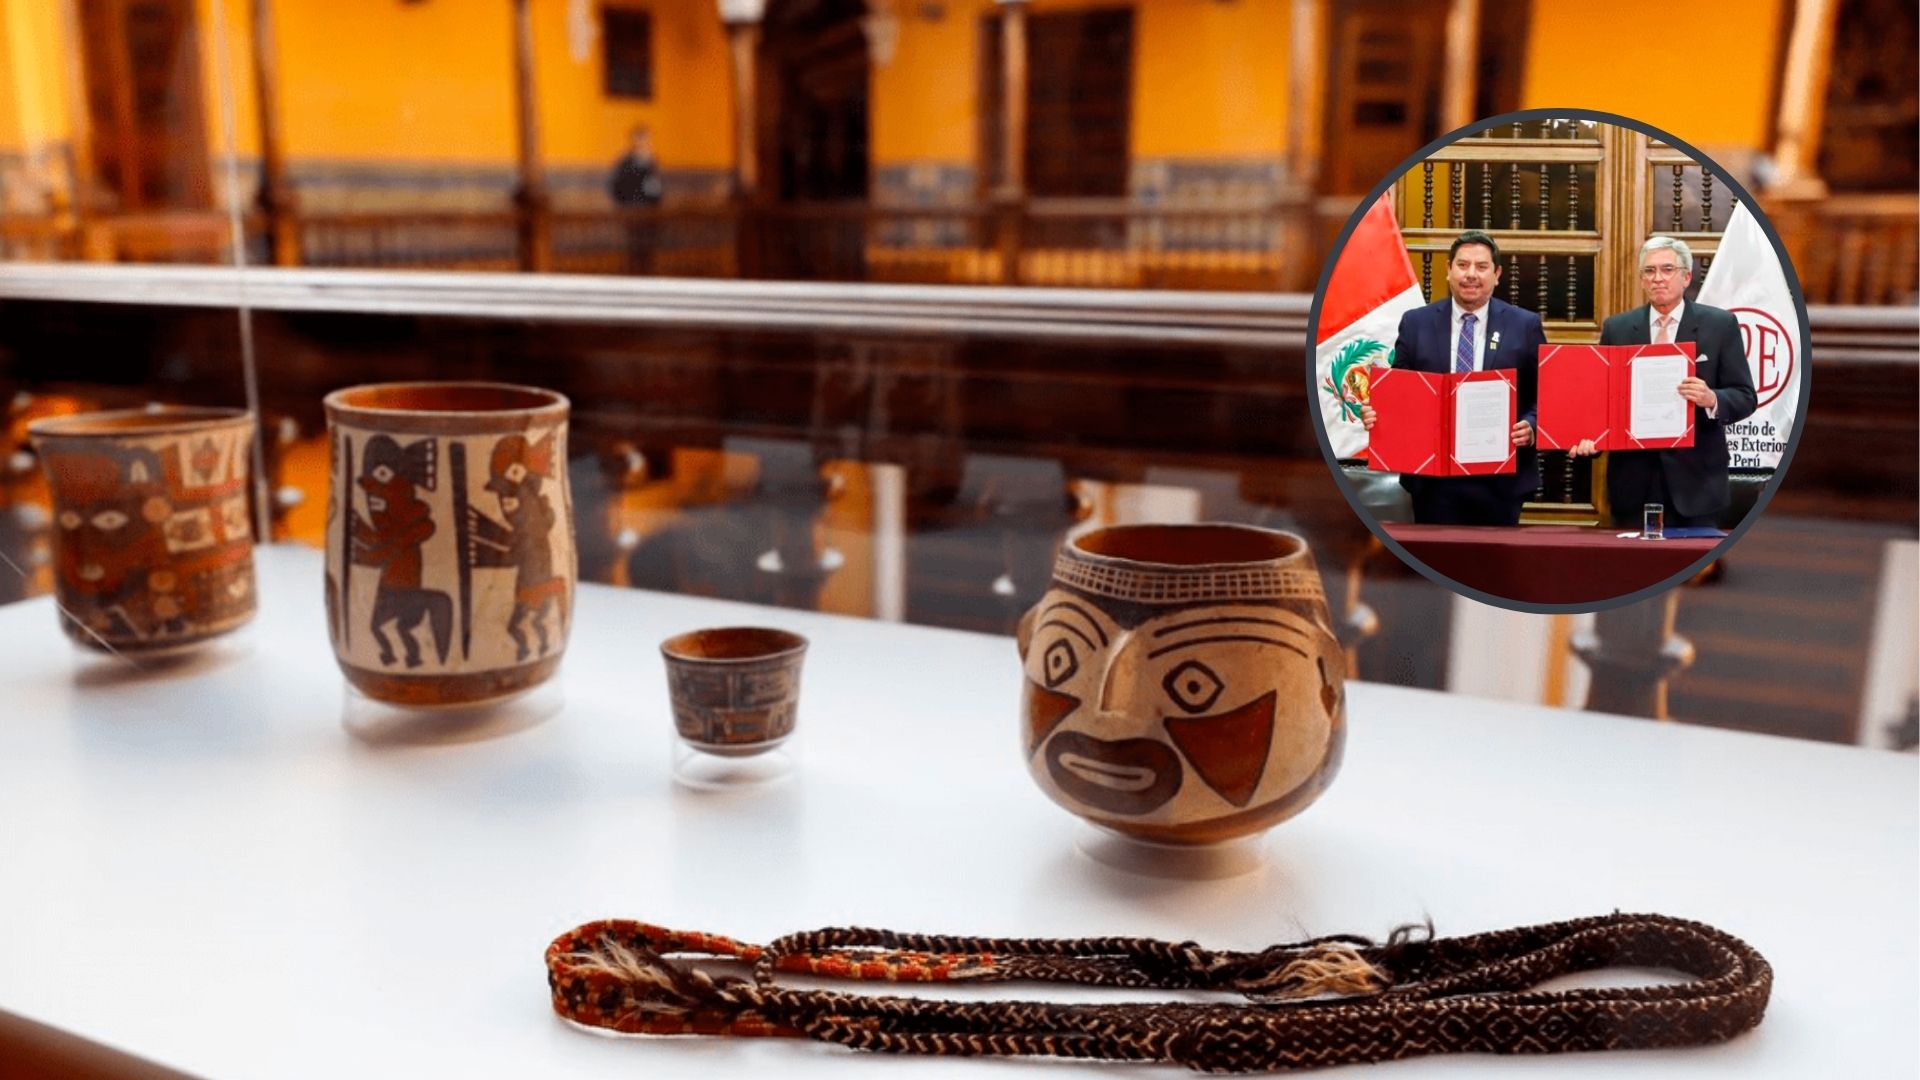 MINCUL: Retornan 33 bienes culturales patrimoniales a Perú